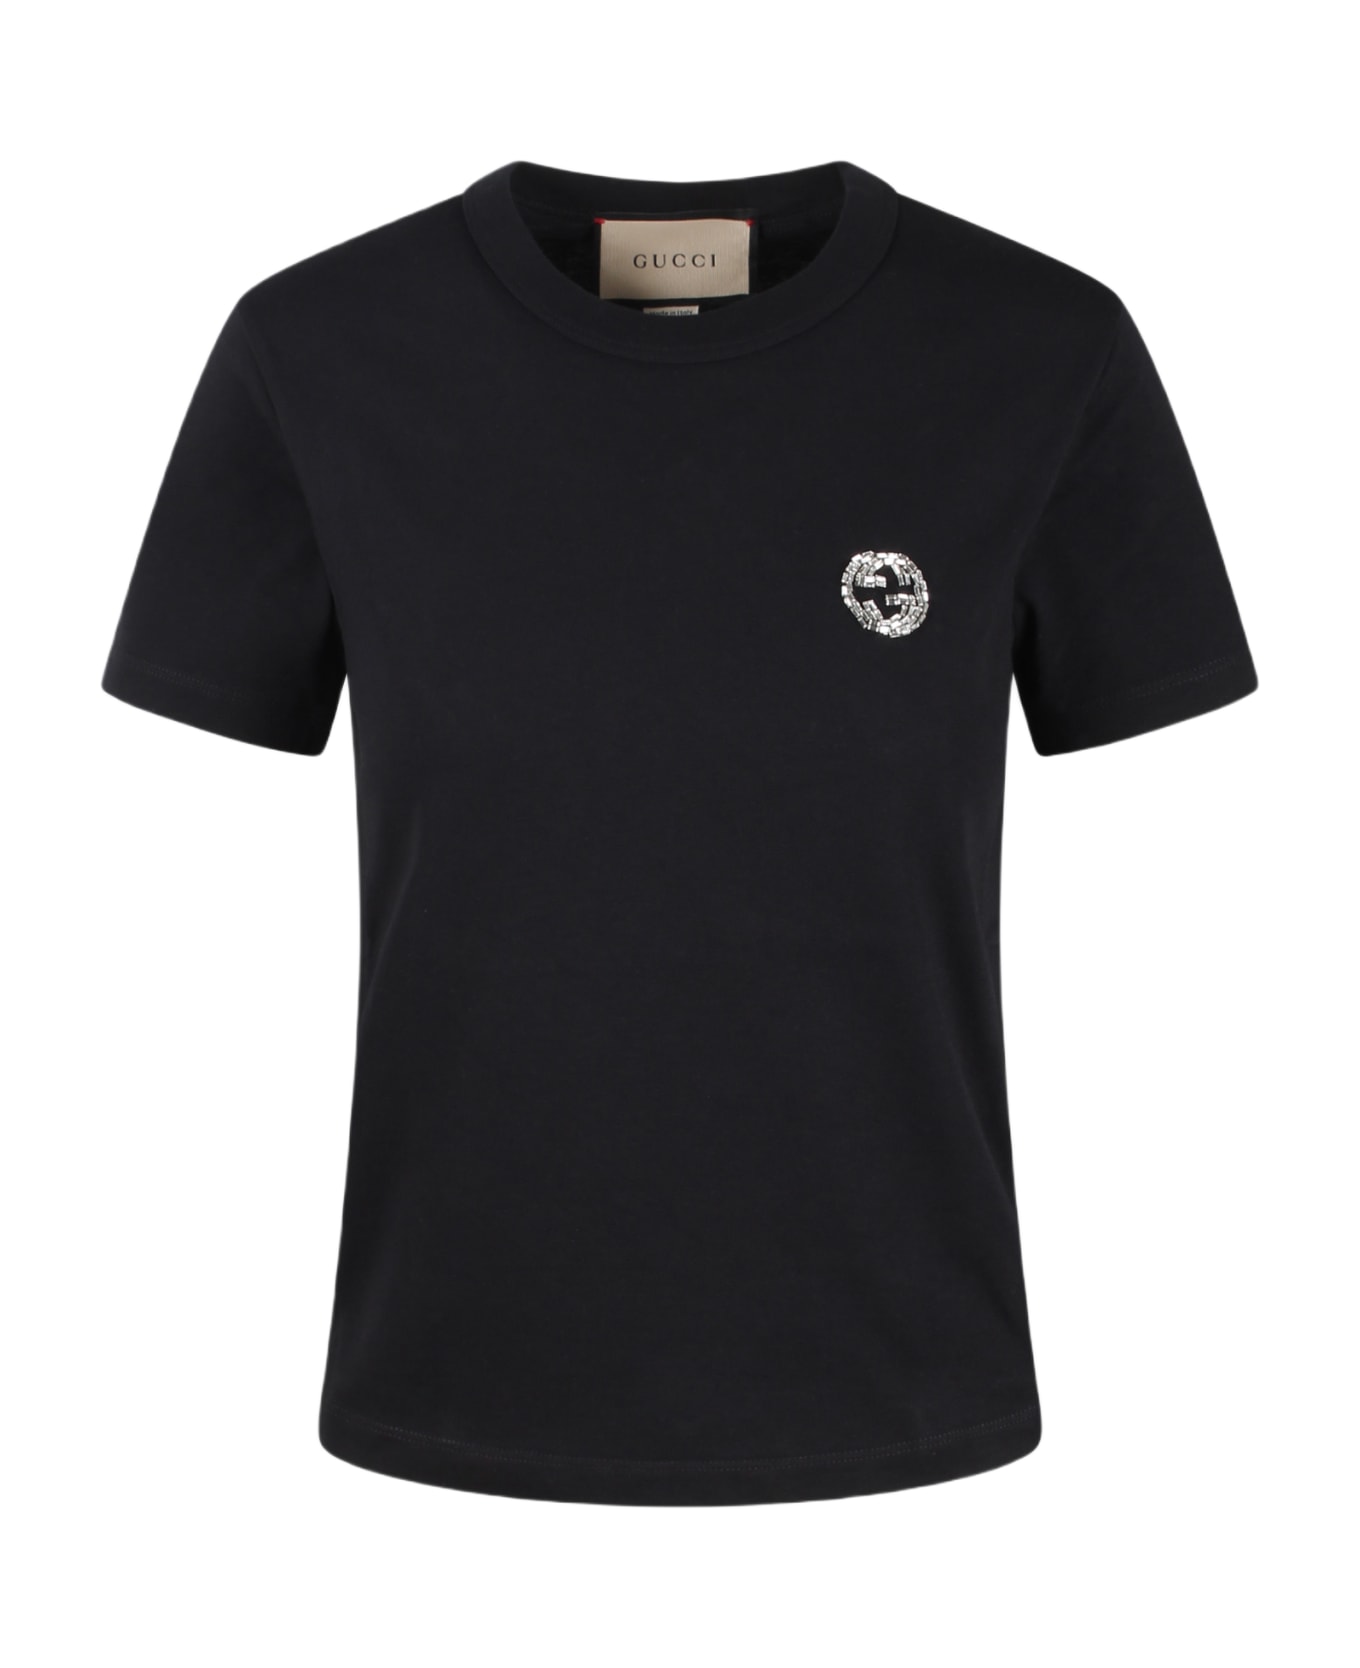 Gucci T-shirt - Black Tシャツ